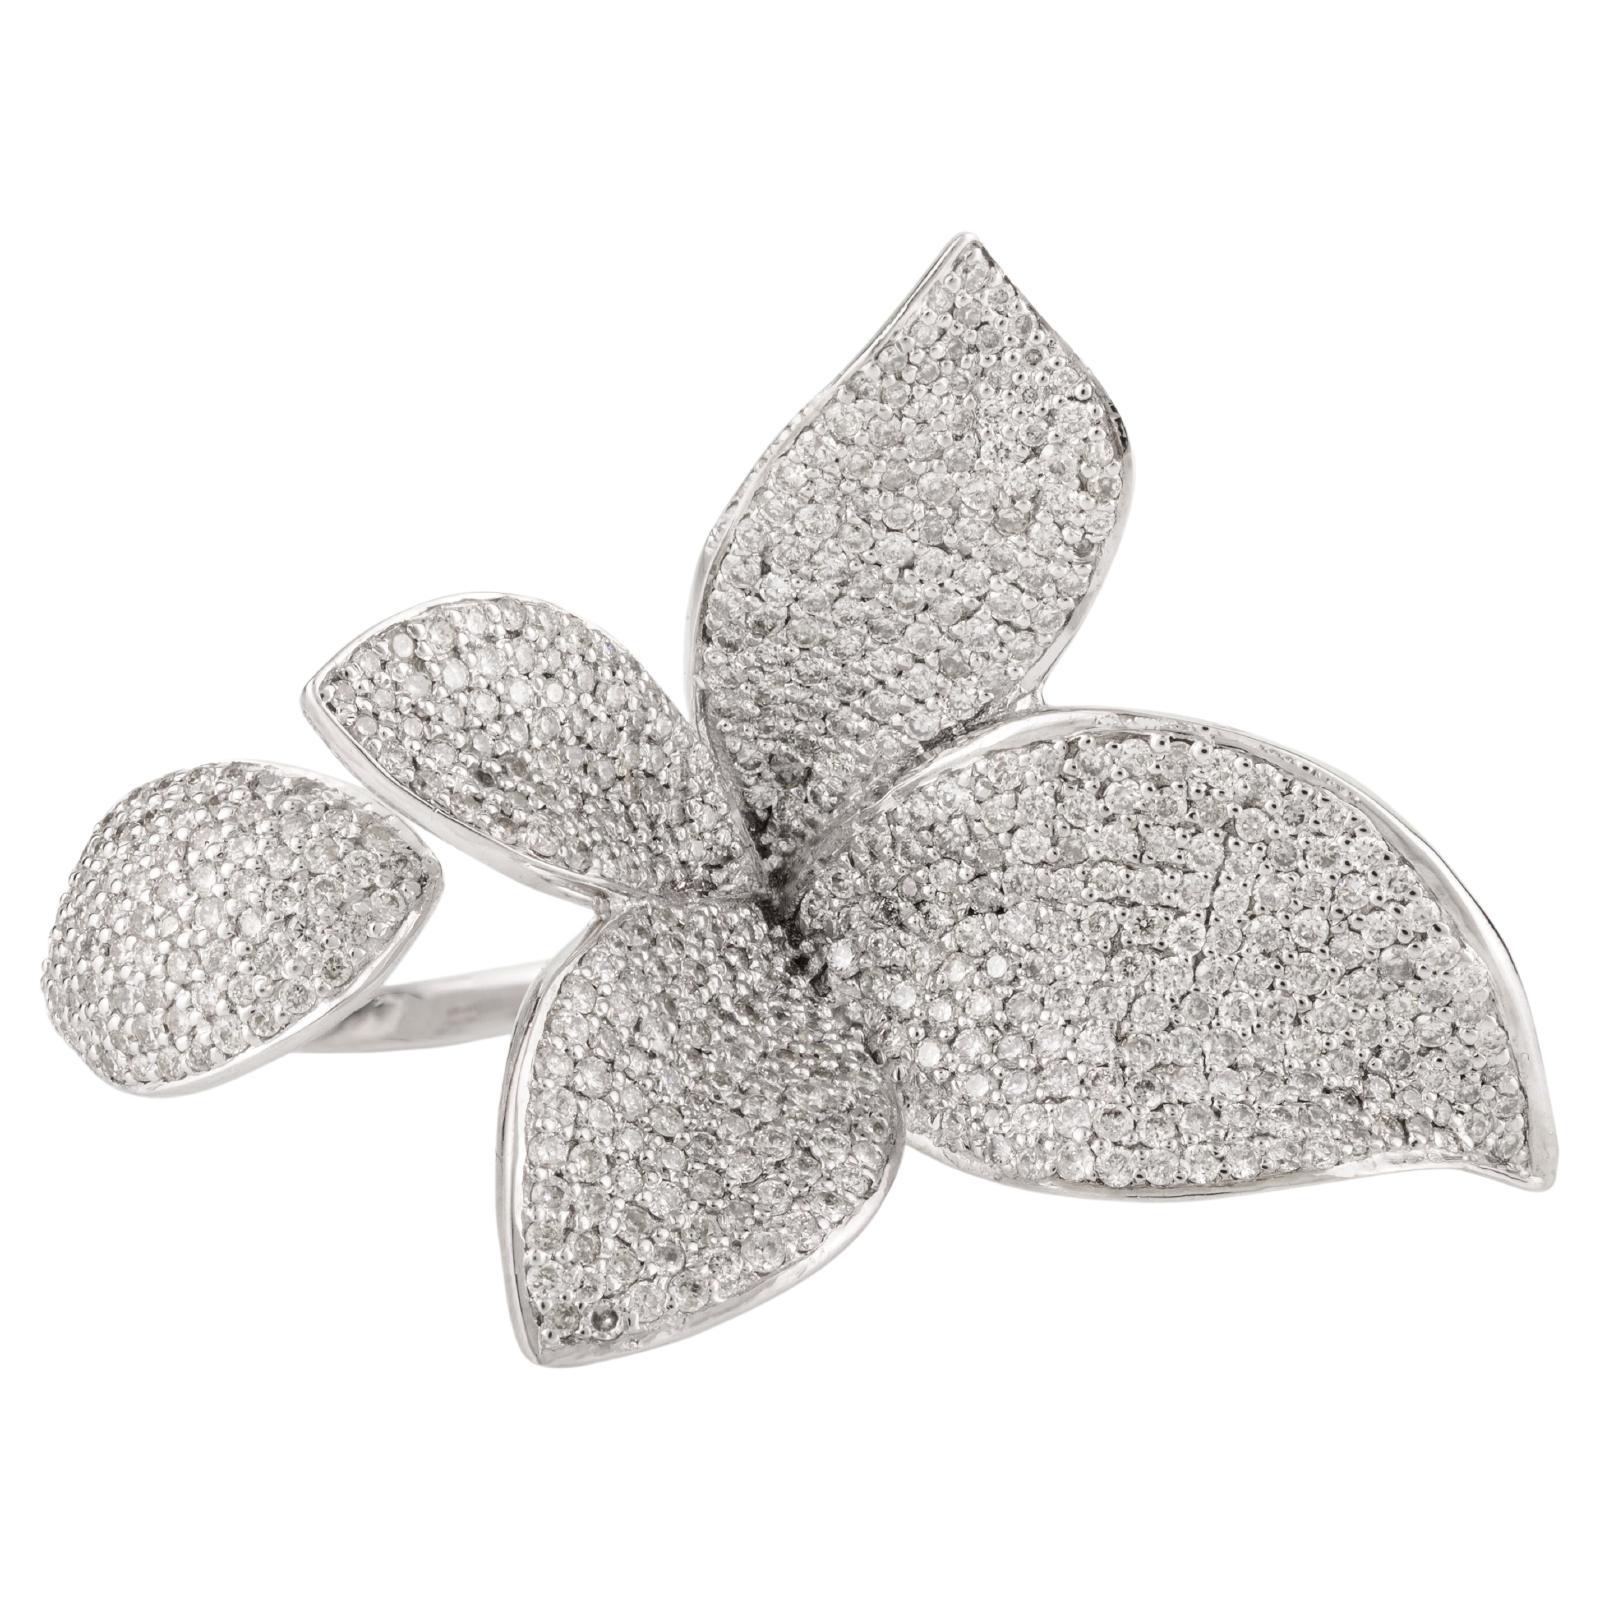 Designer 2 Carat Diamond Flower Cocktail Ring in 18k White Gold for Women